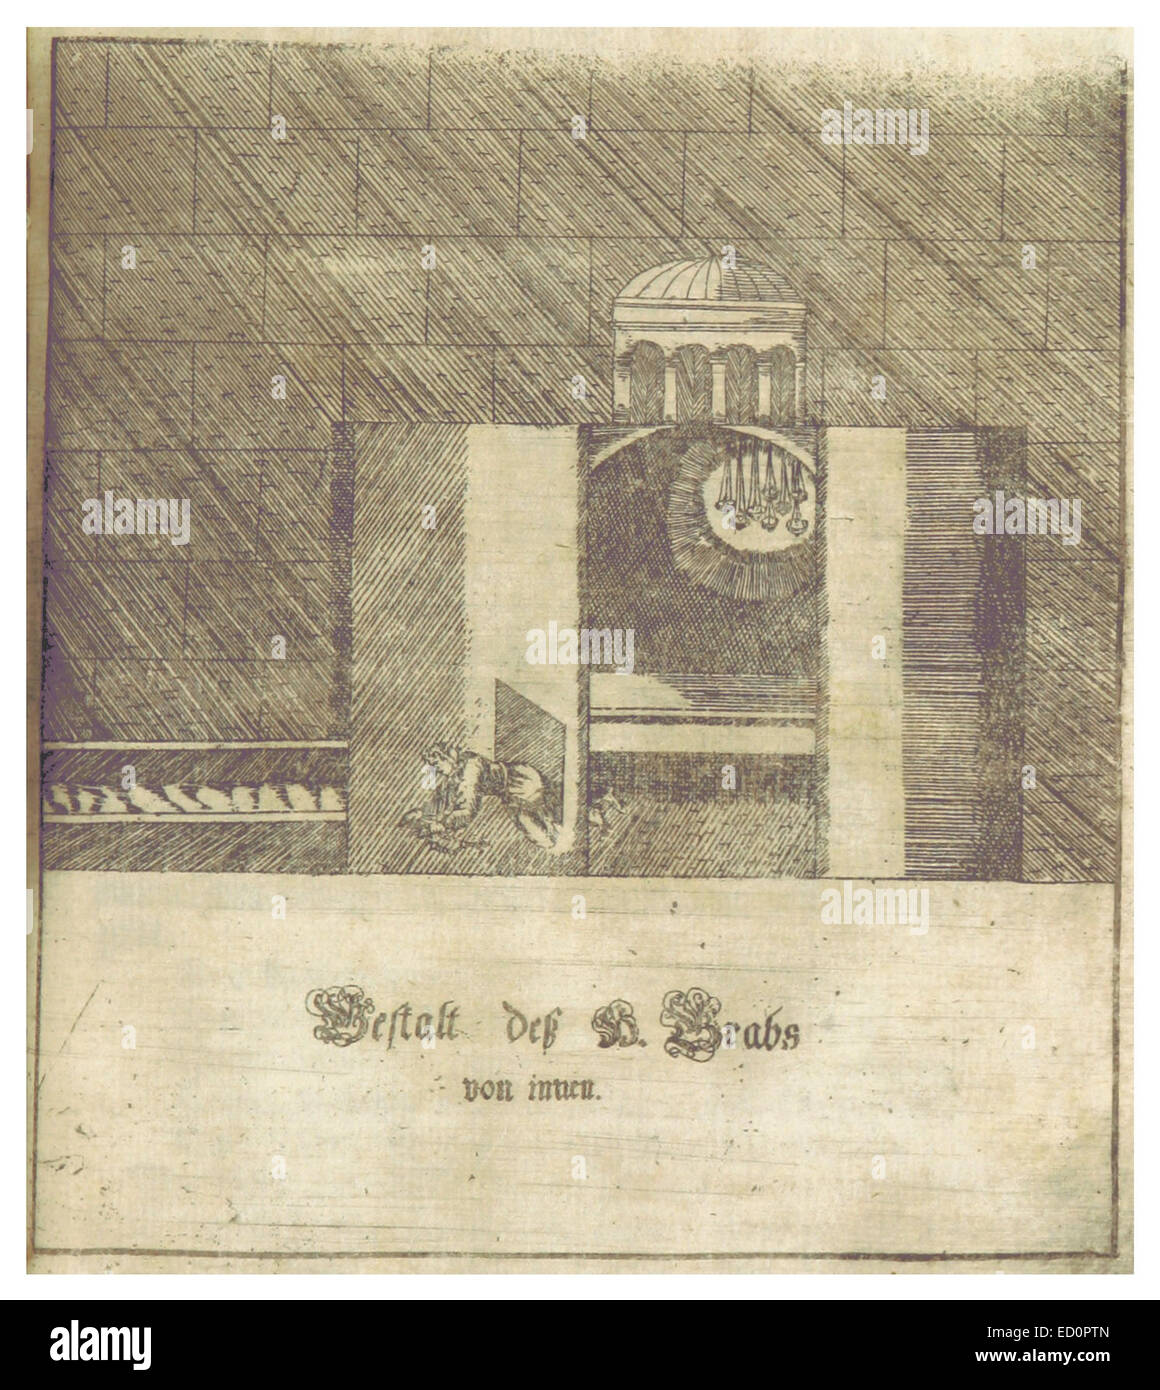 FLAMINUS(1681) p261 Nr.5 - Gestalt des H. Grabs von innen Stock Photo